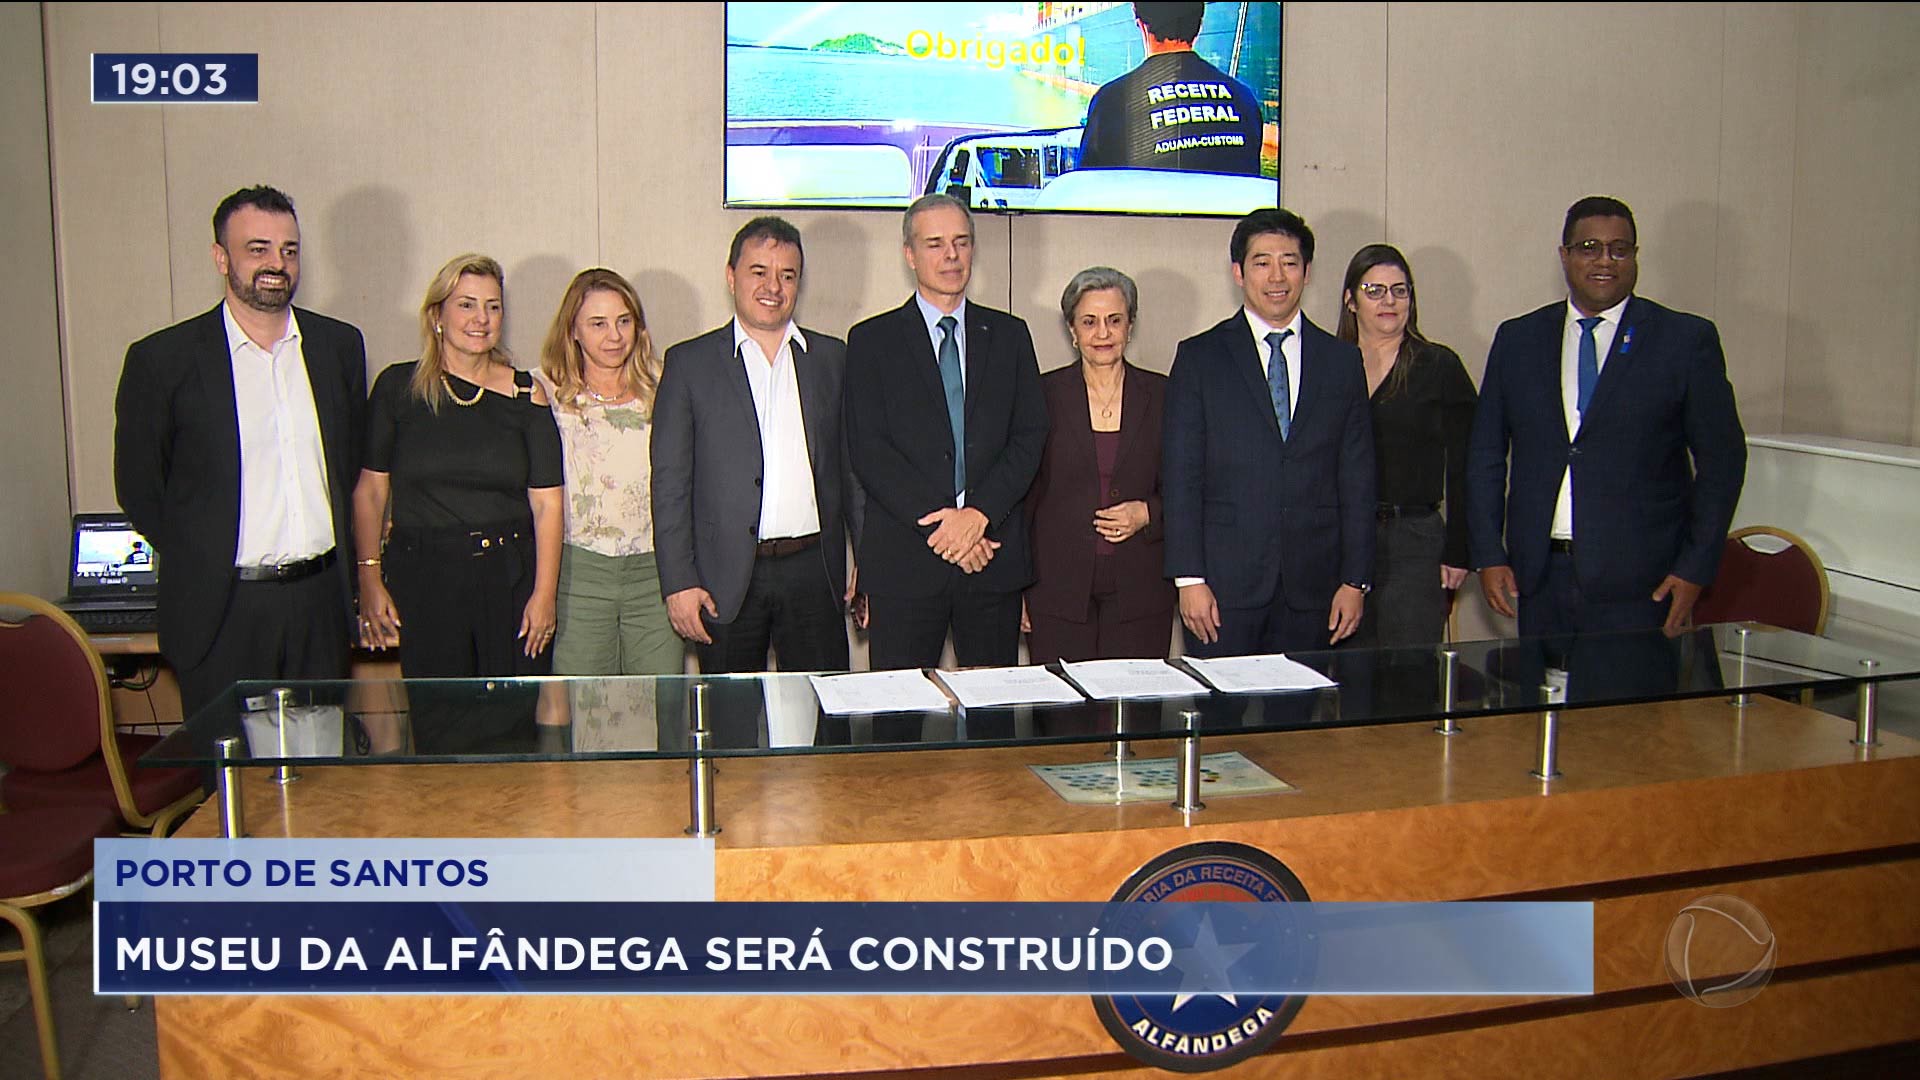 Vídeo: Alfândega de Santos contará com novo museu